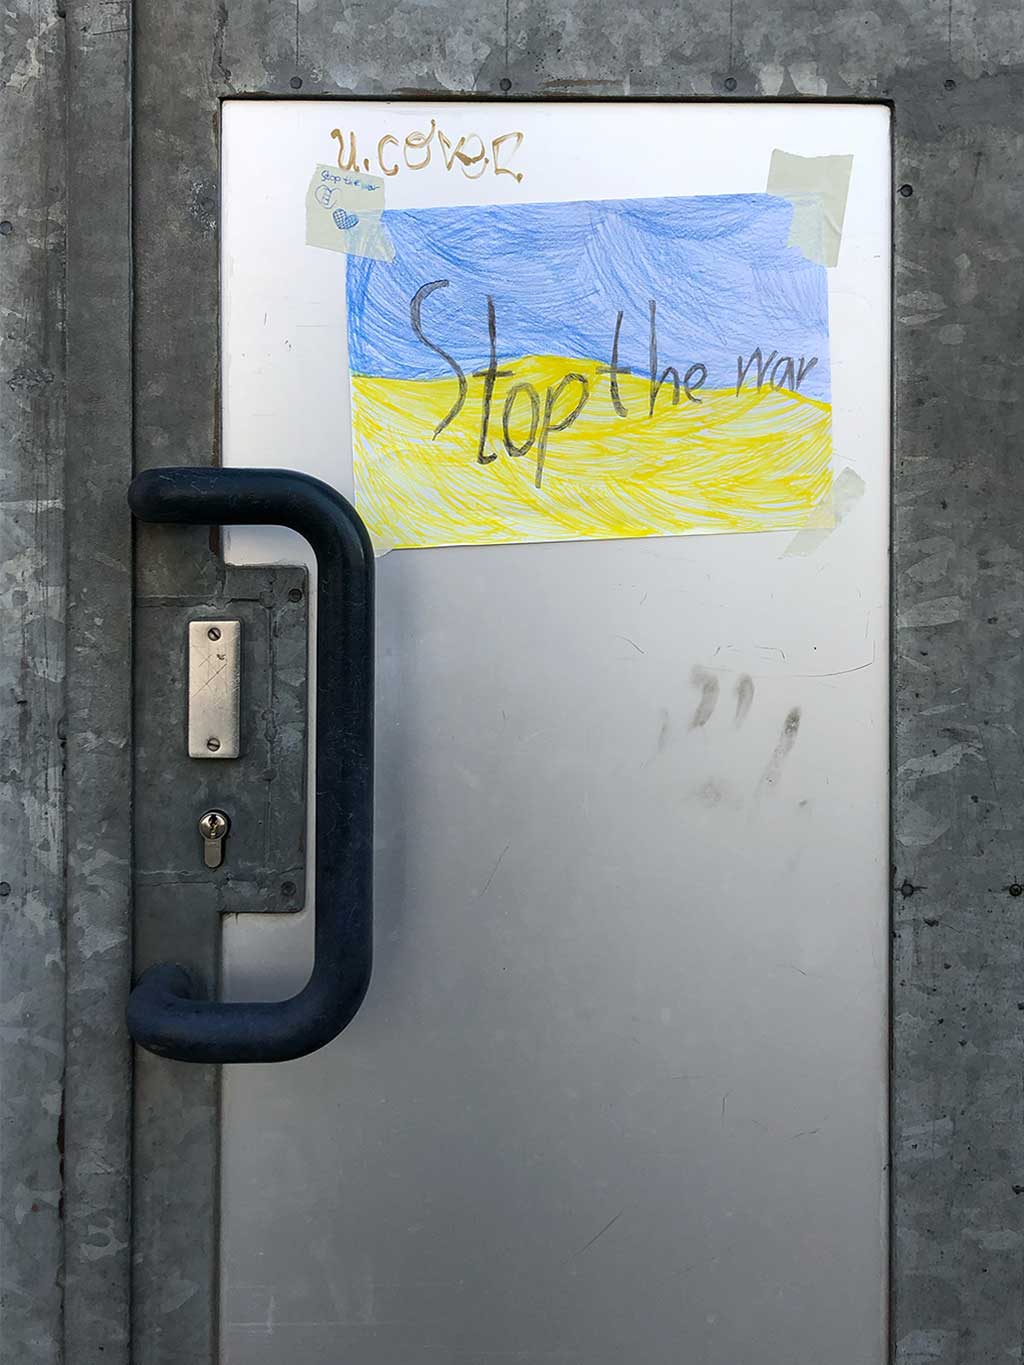 Ukraine-Flagge auf Papier mit Stop the war